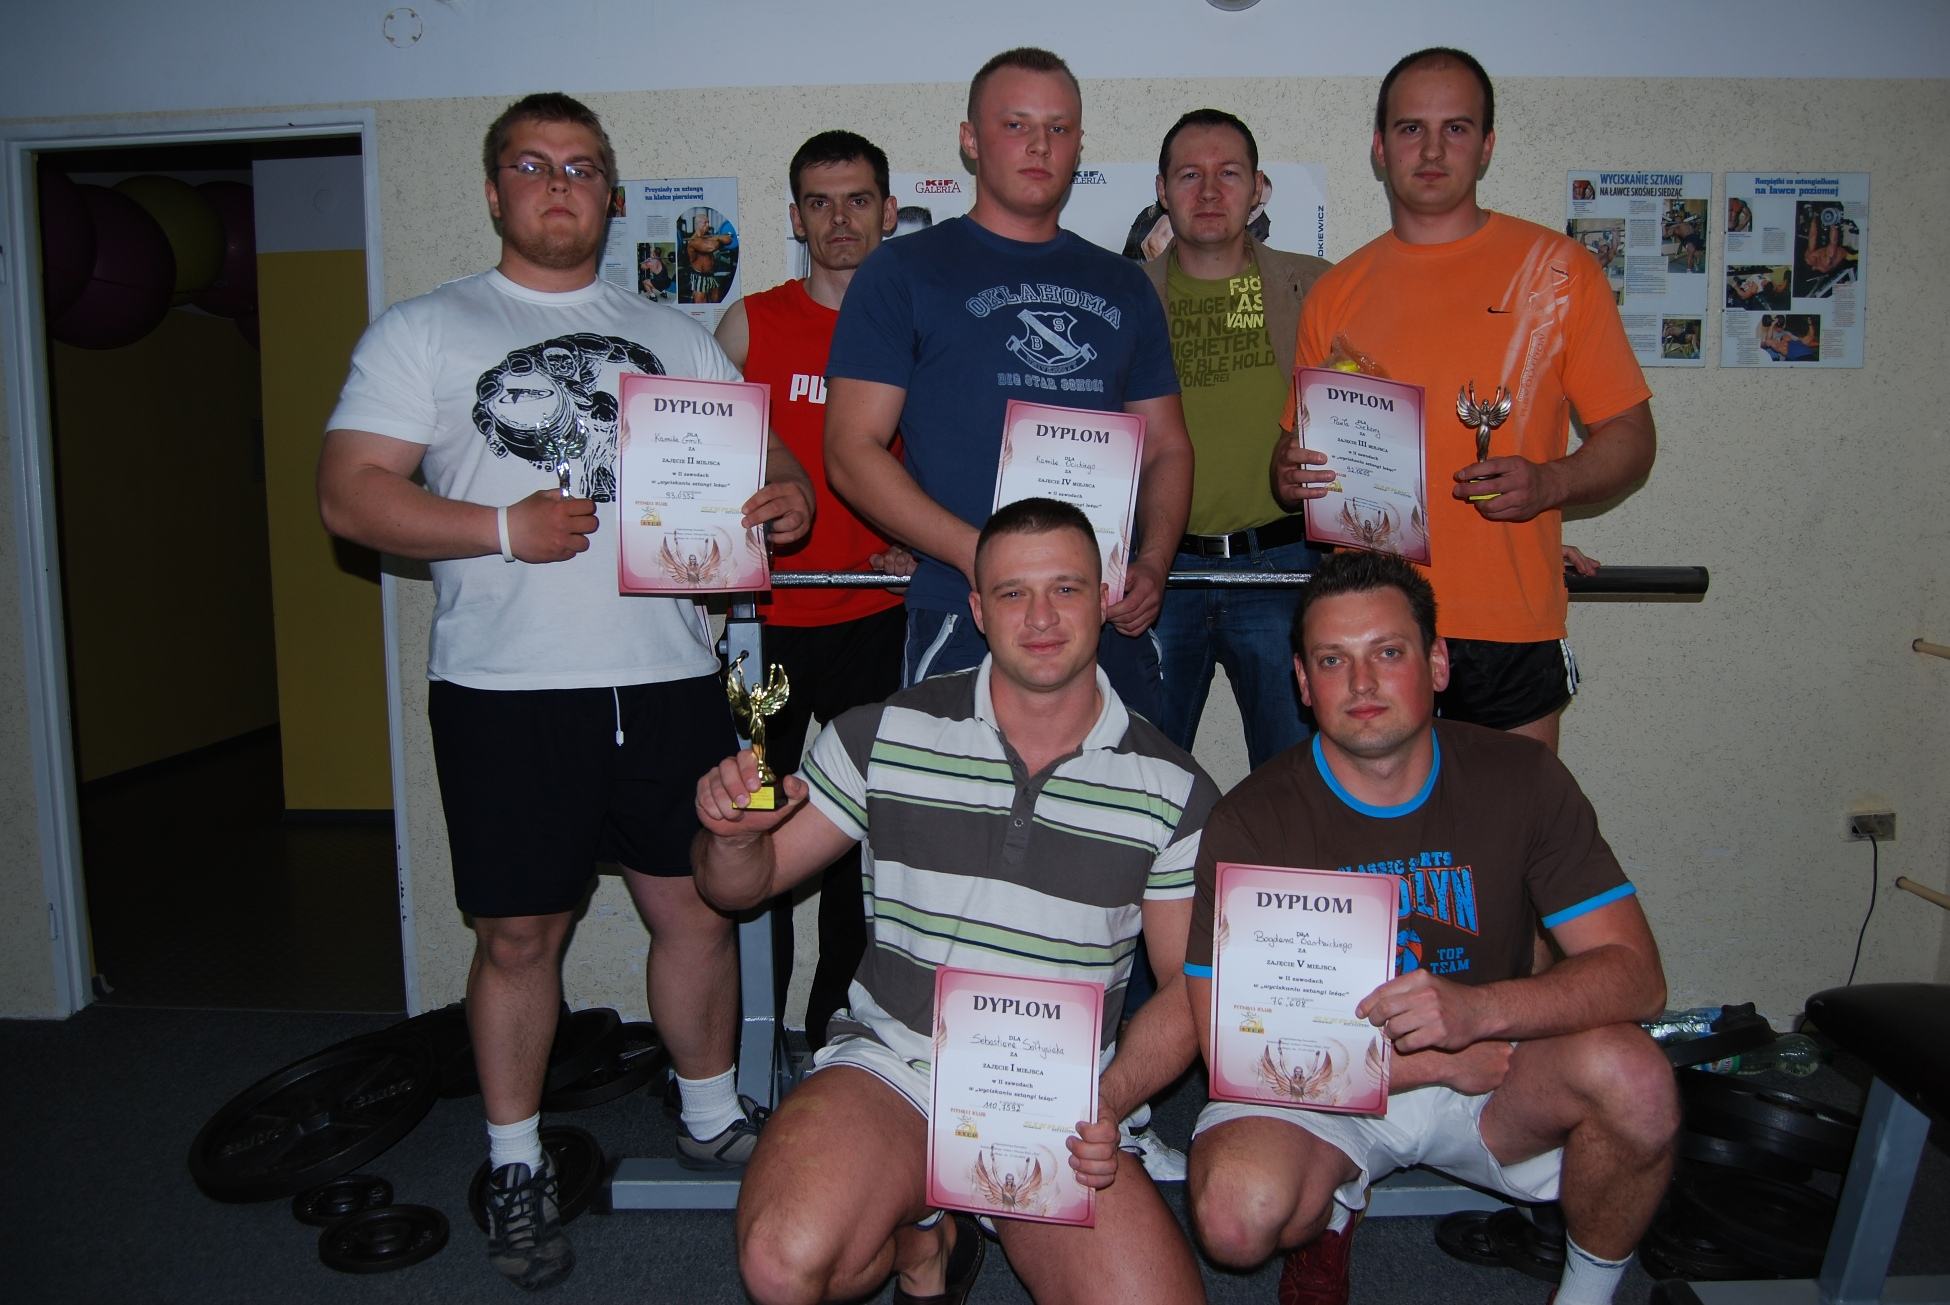 Uczestnicy II Zawodw Fitness Klubu Step i Redakcji Sierpc Online w Wyciskaniu Sztangi lec wraz z organizatorami imprezy.